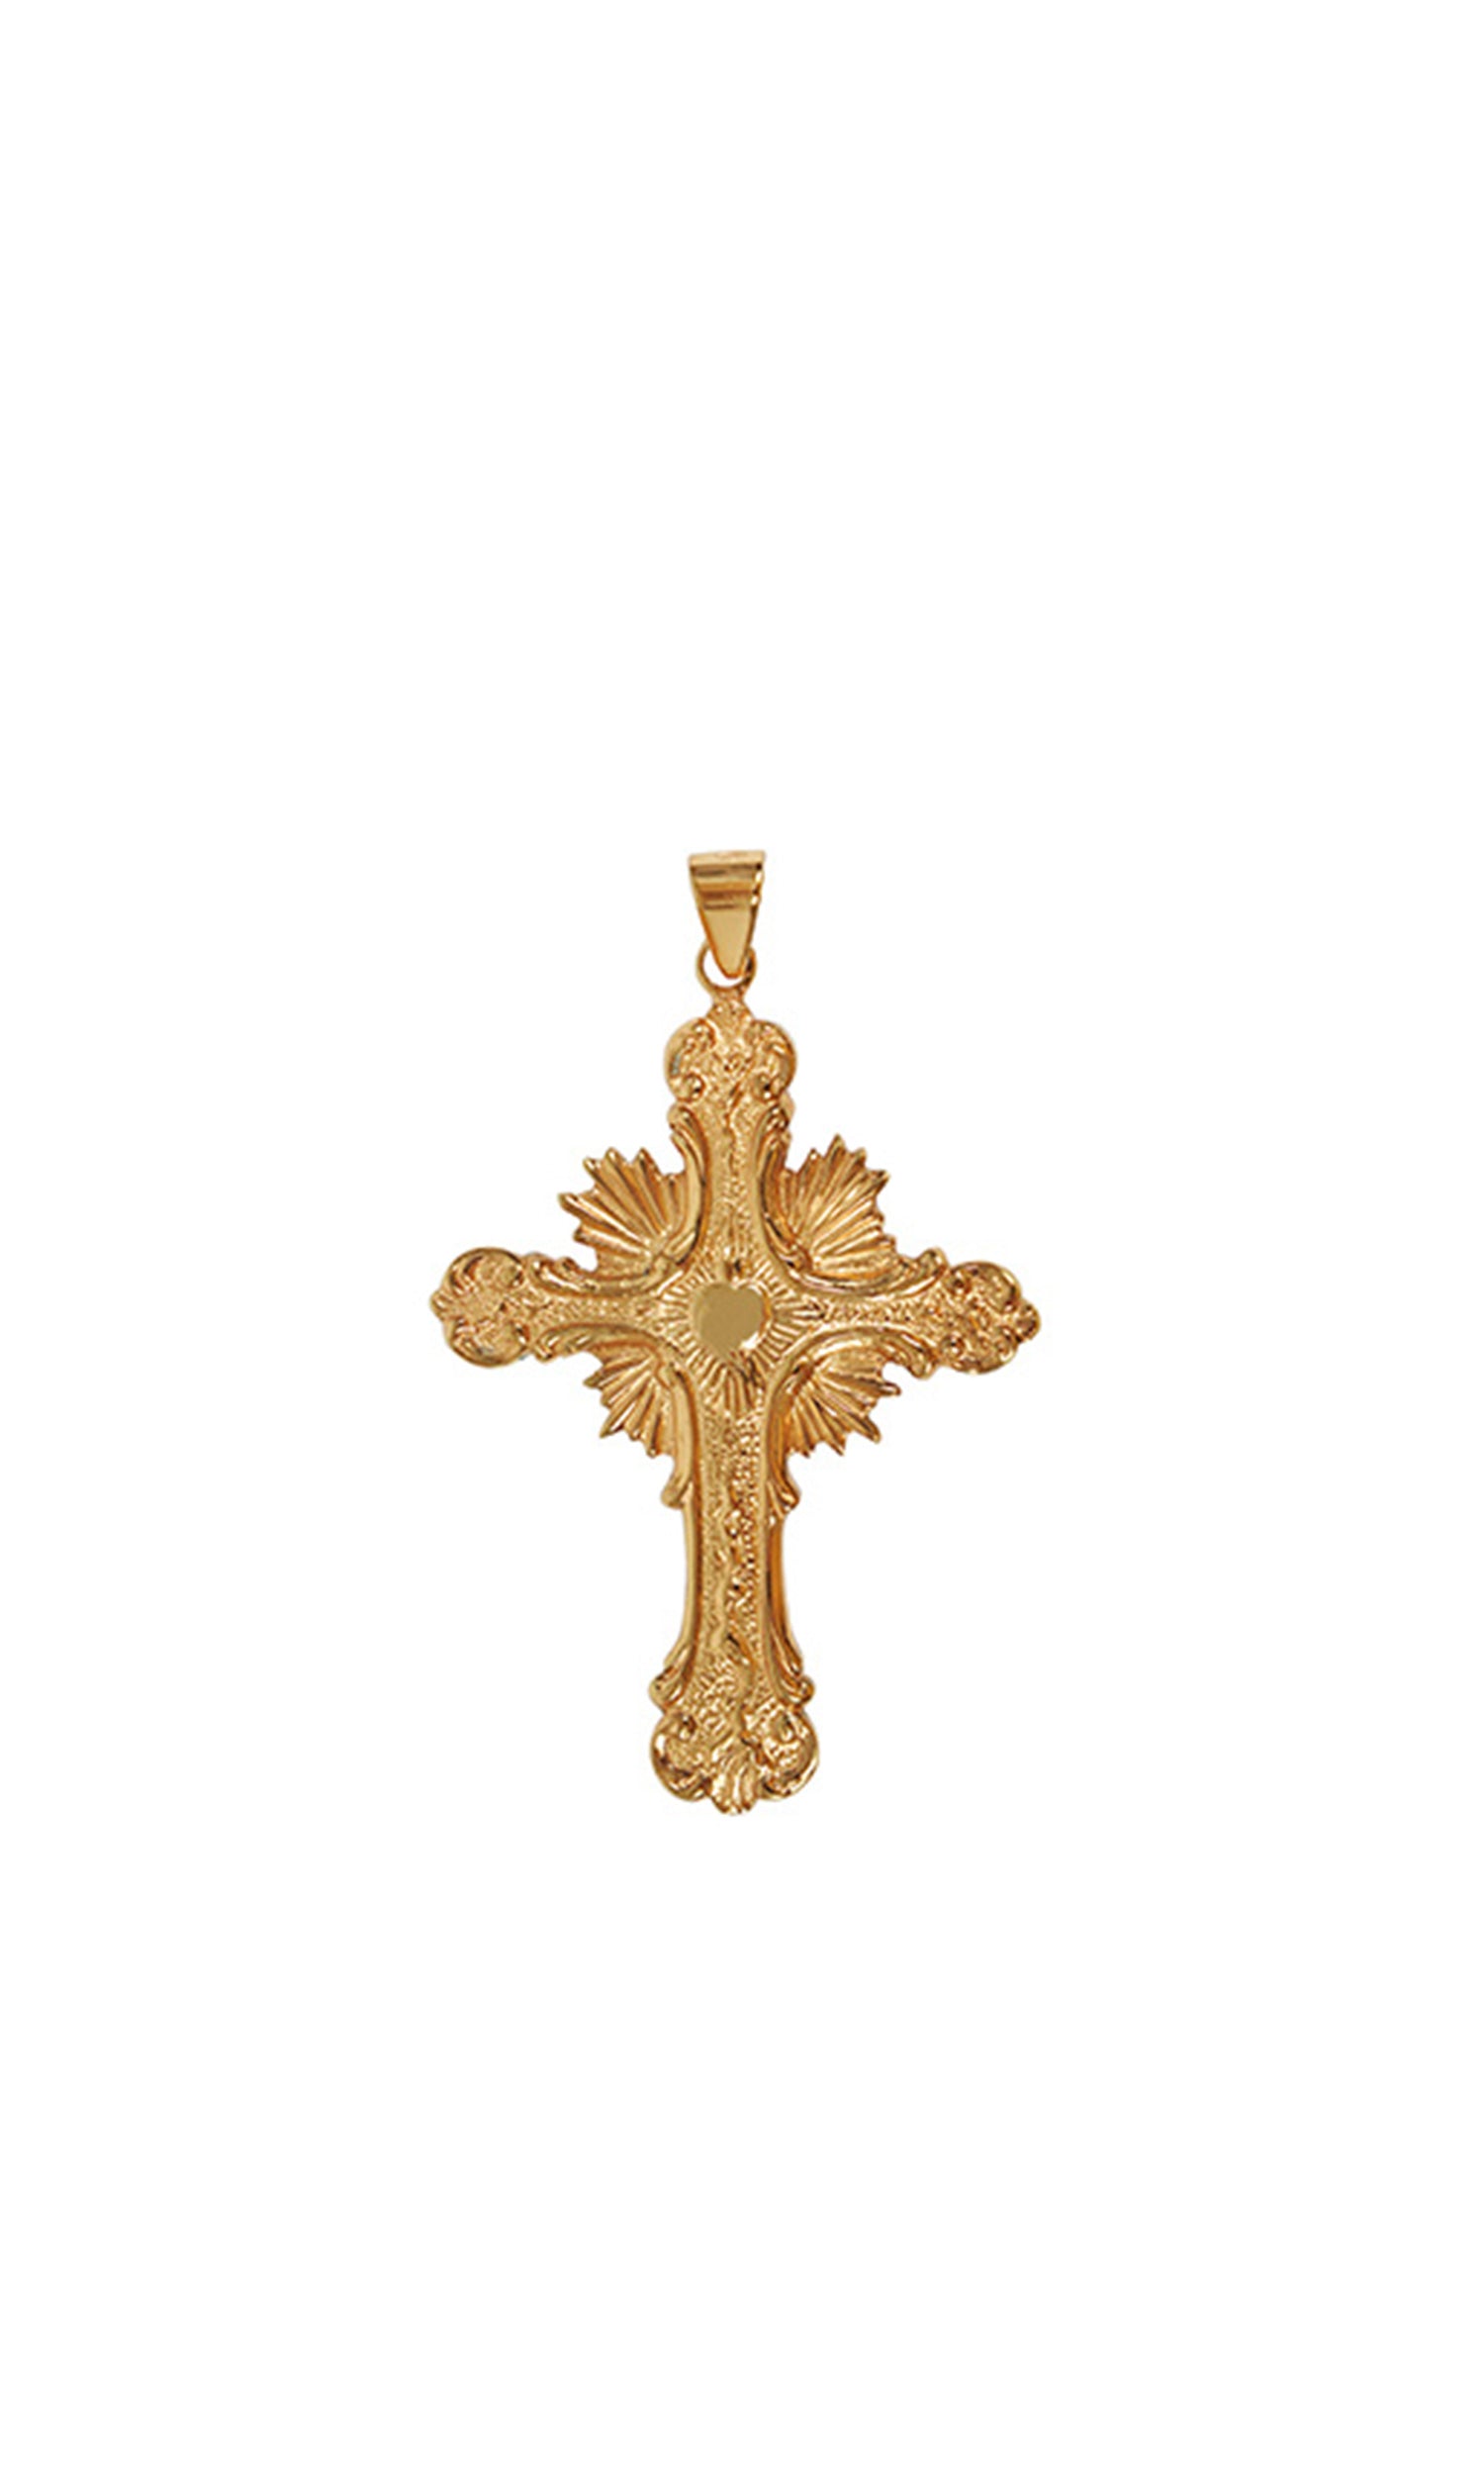 Croce pettorale sacra Barocca in finitura Dorata Altezza 10 cm